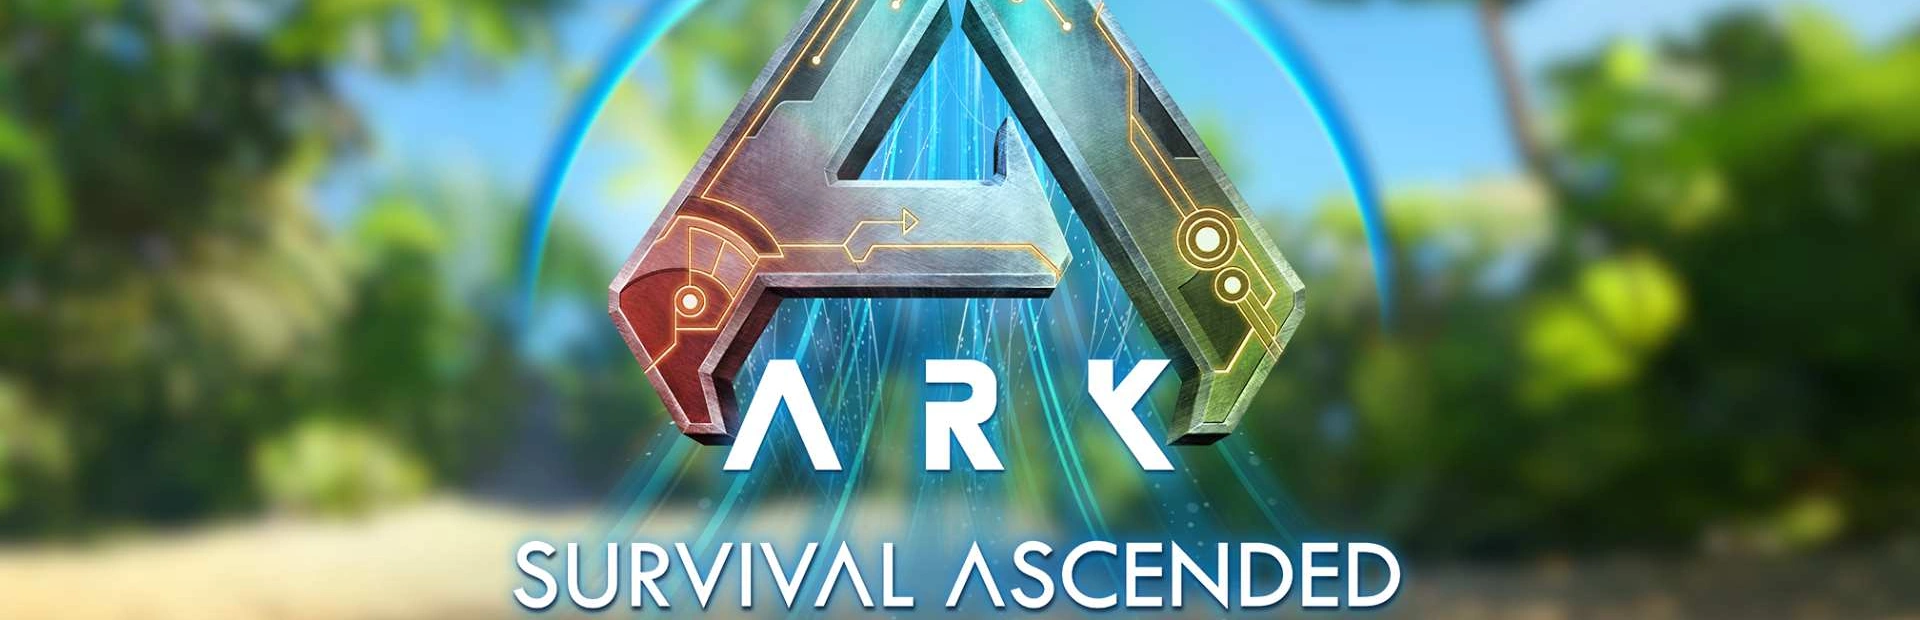 دانلود بازی ARK: Survival Ascended برای کامپیوتر | گیمباتو